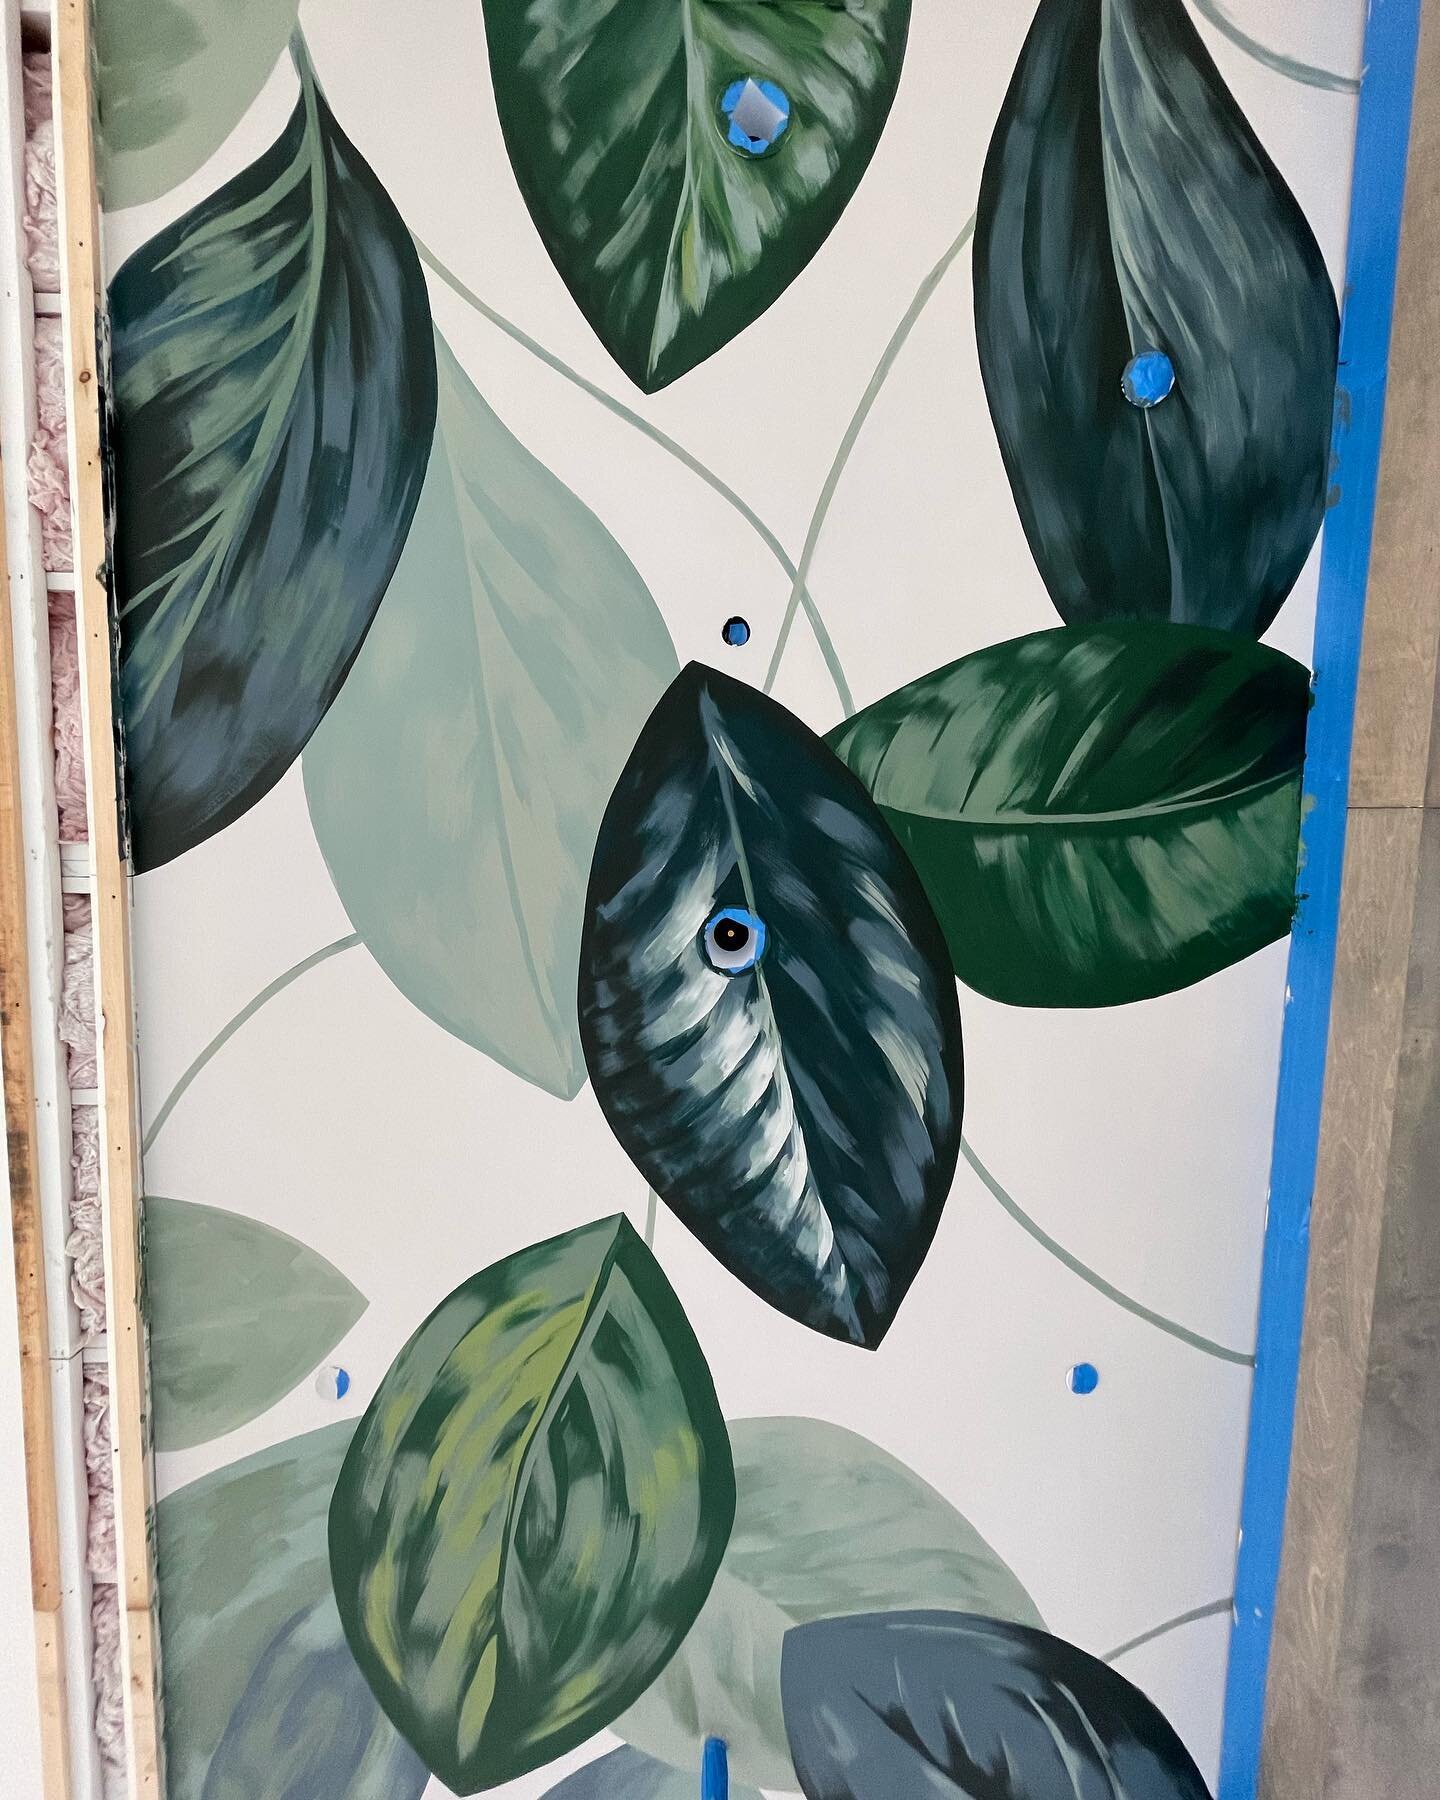 ✨ just mural things ✨

#mural #ceilingmural #botanicalmural #lakenona @learnlakenona